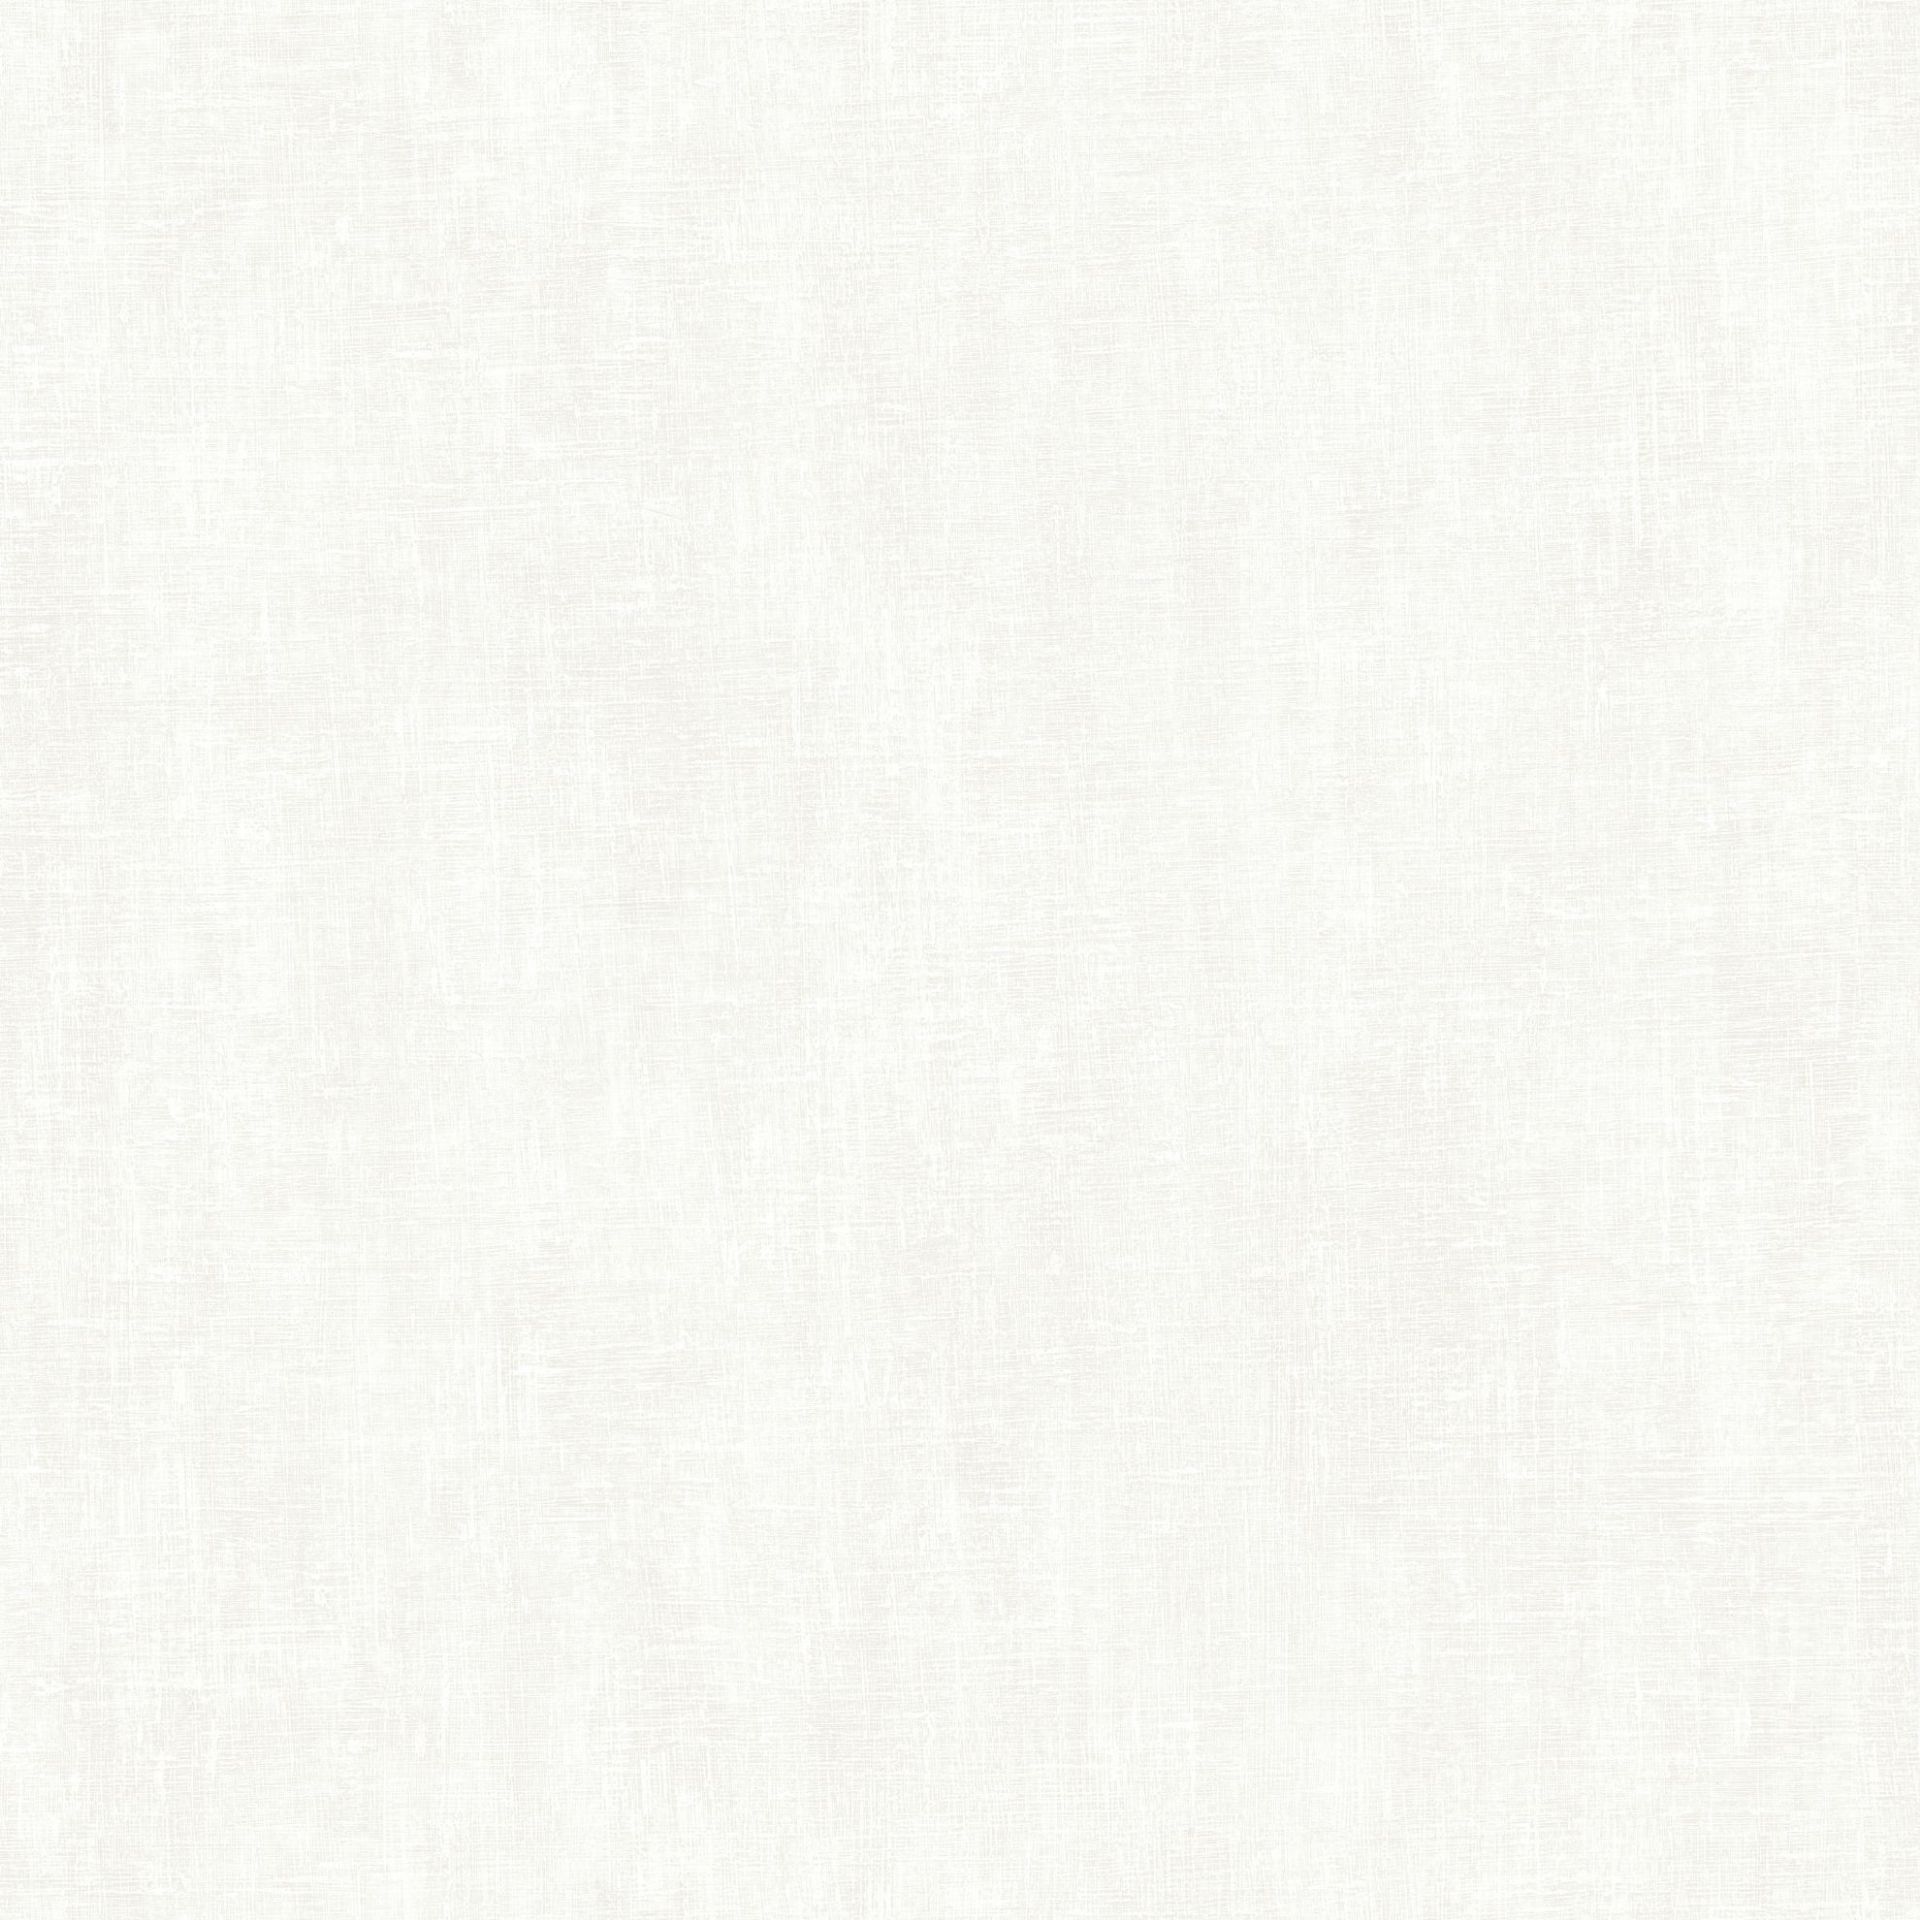 Nærbilde av Lycke Krita 3, en lys grå tapet som minner om finishen til kalkmaling.